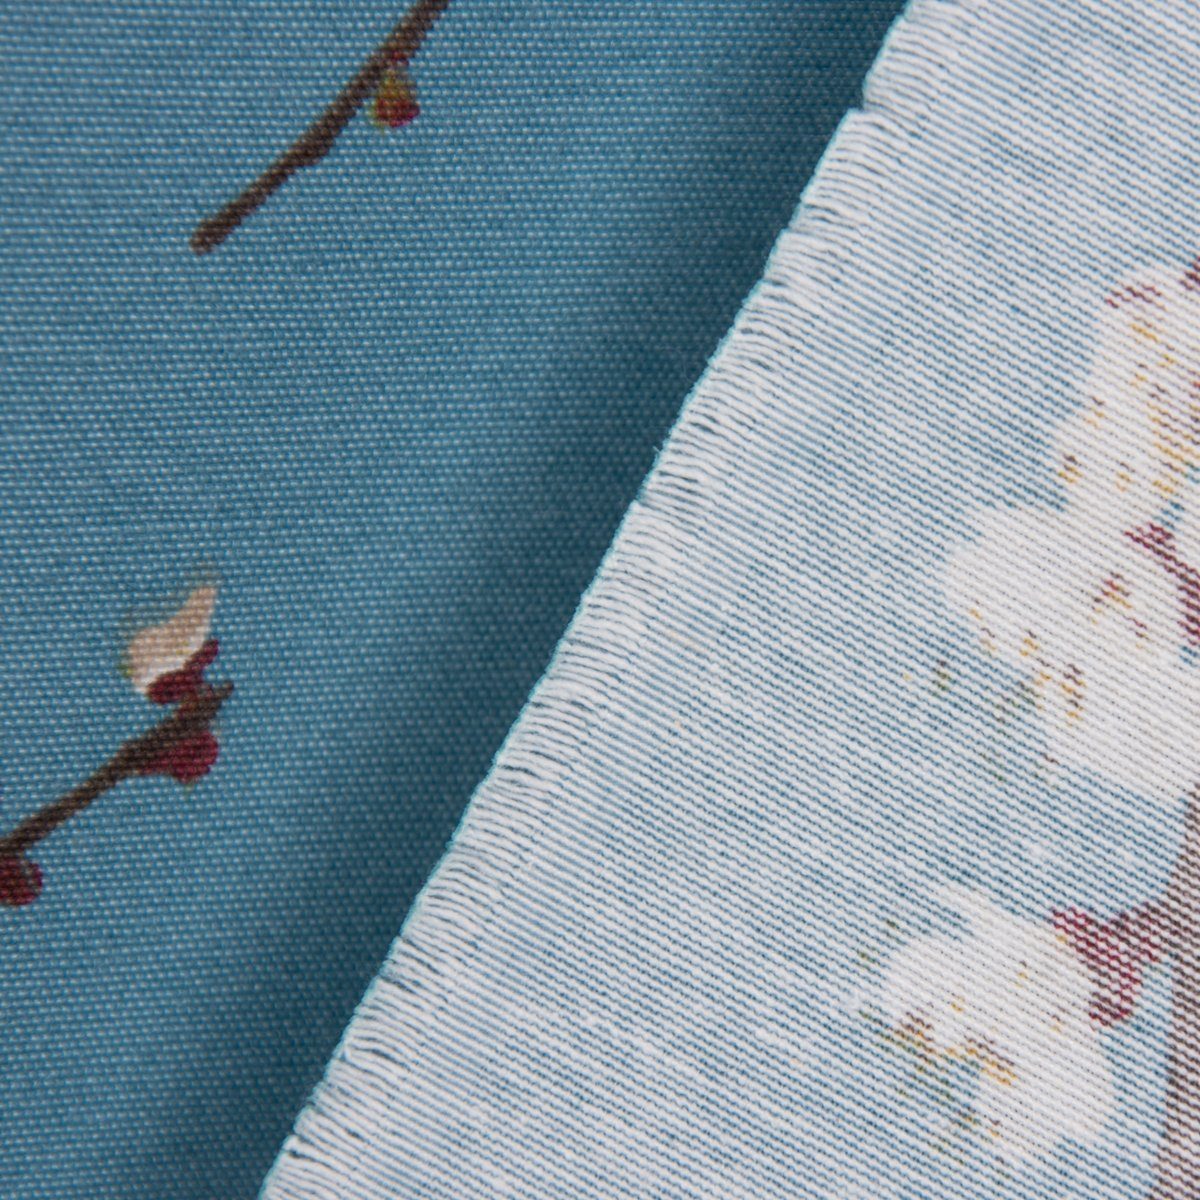 40x160cm, handmade SCHÖNER blau Tischläufer weiß Kirschblüten Tischläufer SCHÖNER braun LEBEN. LEBEN.